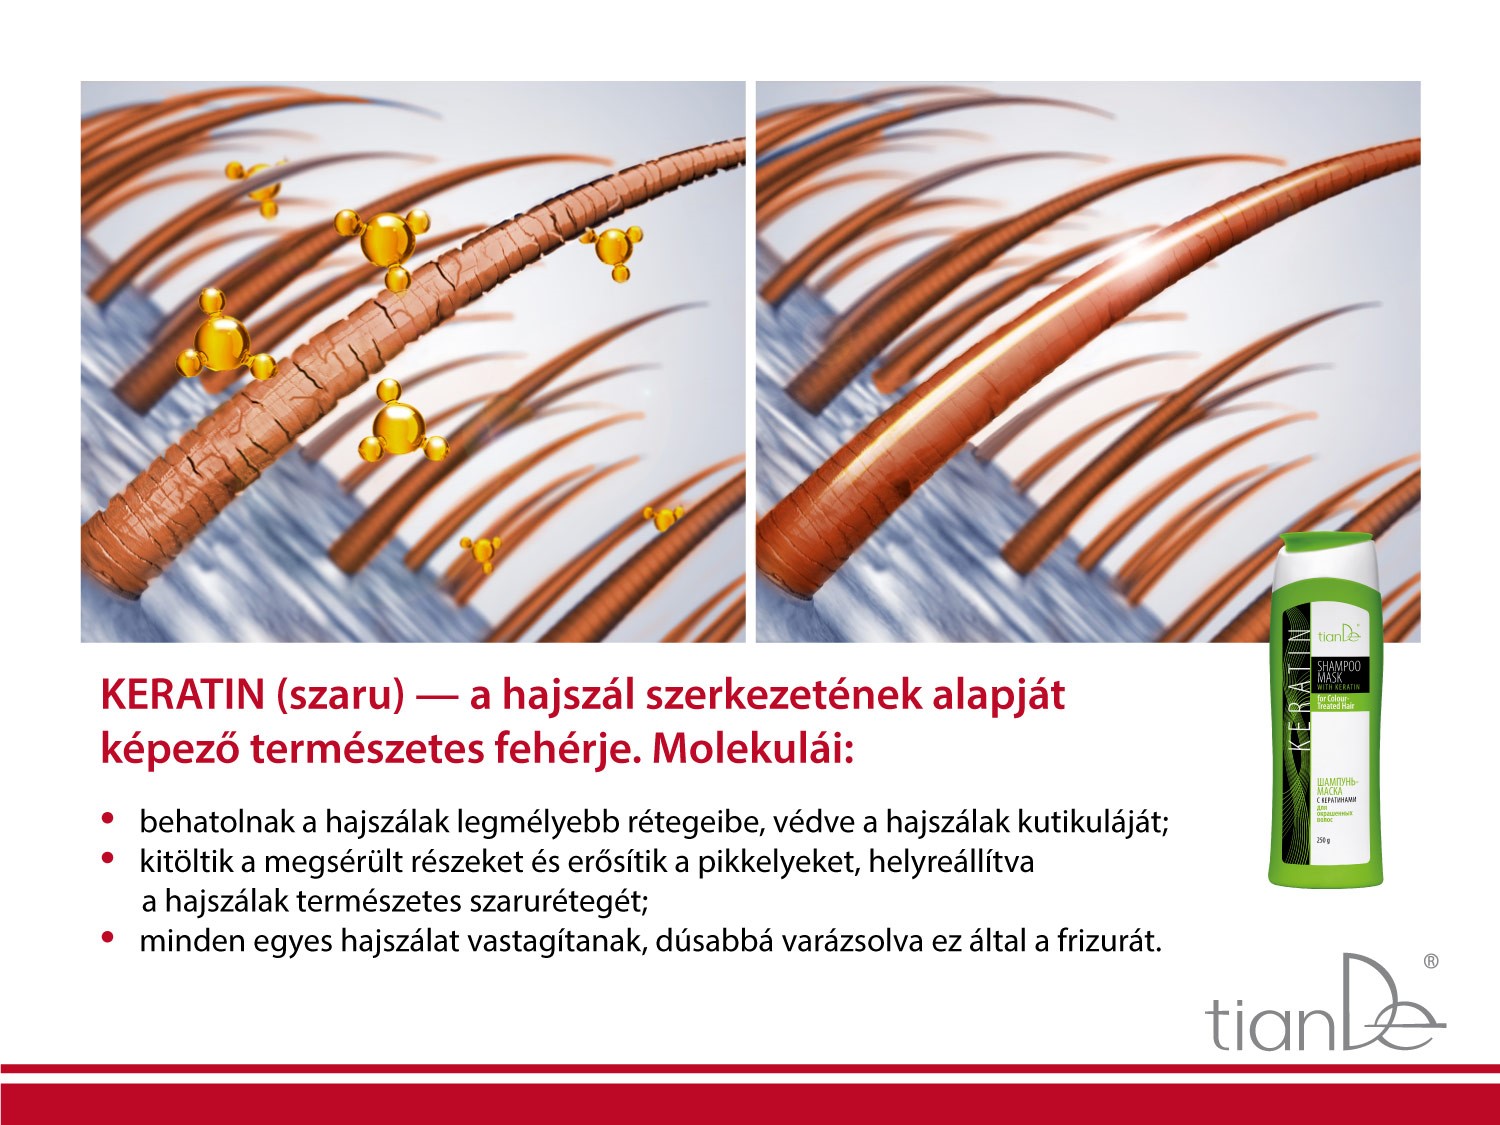 20139-tiande-keratin-hajsampon-pakolas-keratinnal-festett-hajra-02